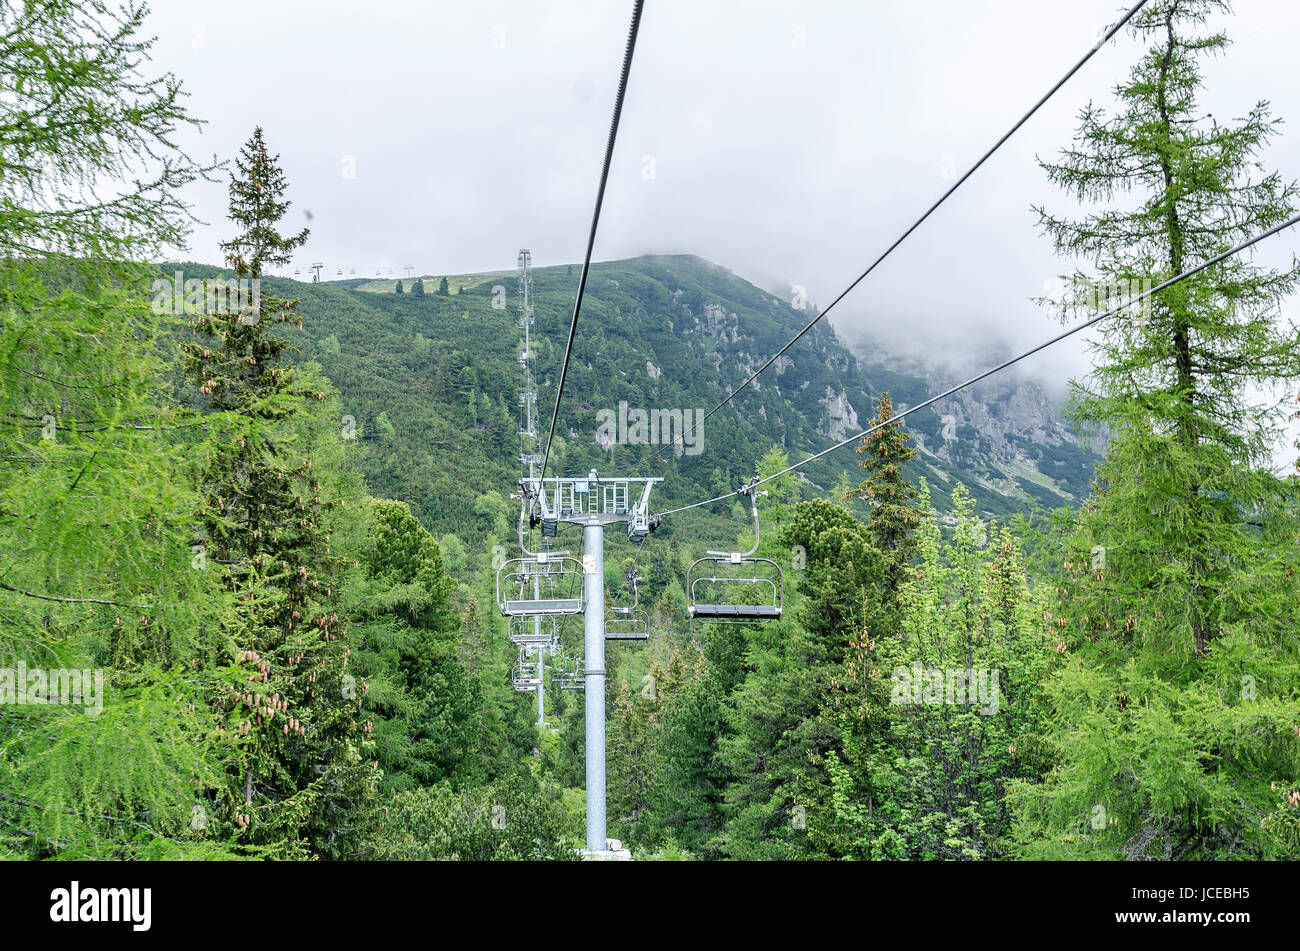 Hautes Tatras, Slovaquie - 11 juin : téléski téléphérique menant à Predne Solisko sommet de montagnes Tatra, le 11 juin 2017 à Hautes Tatras, en Slovaquie. Banque D'Images